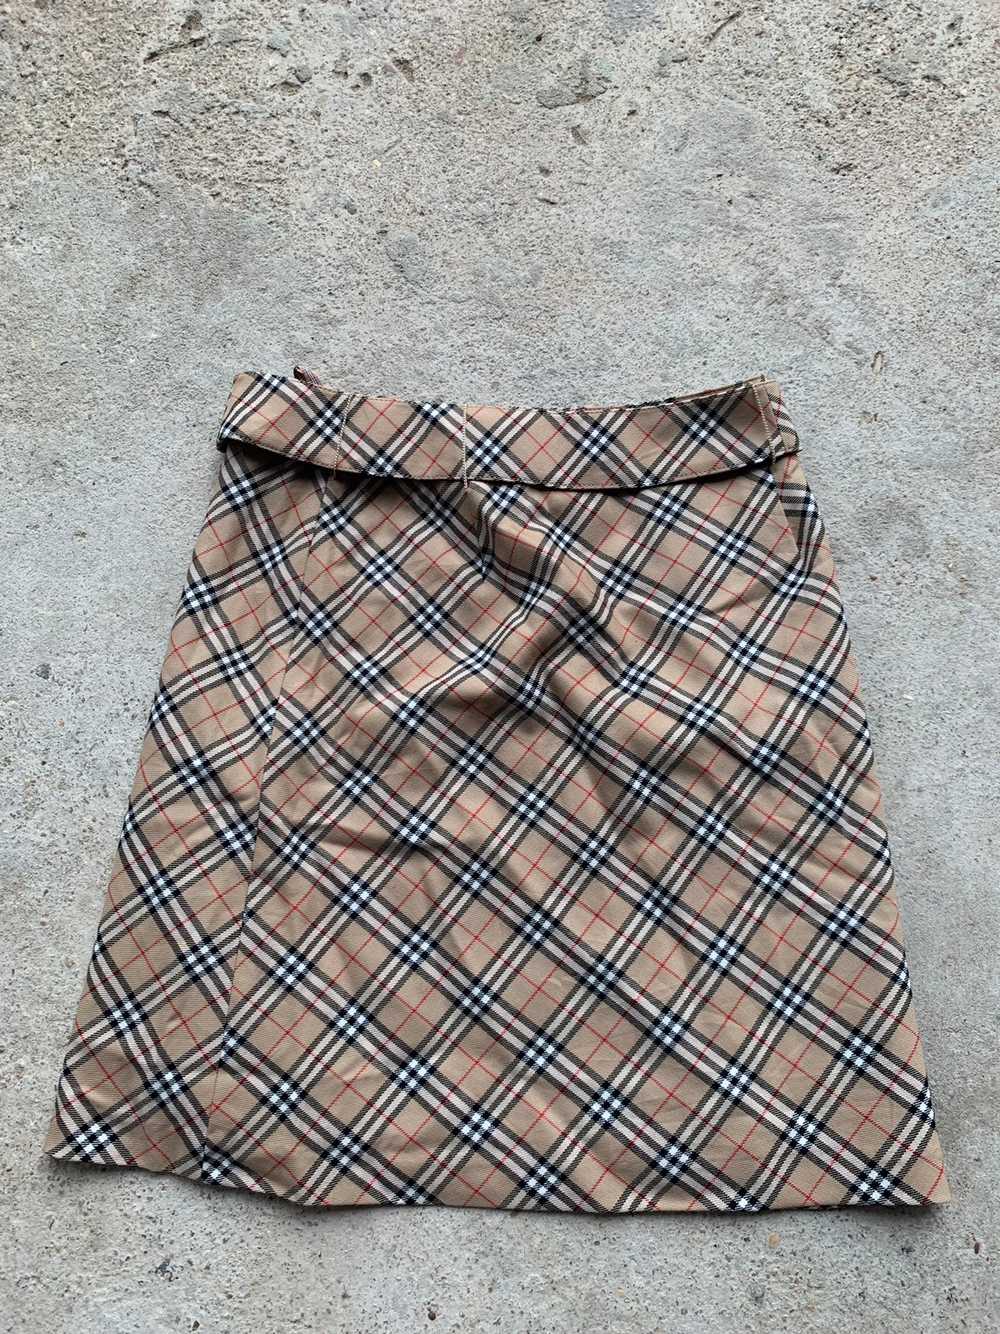 Vintage - 90s Nova Check Burberry Skirt - image 2